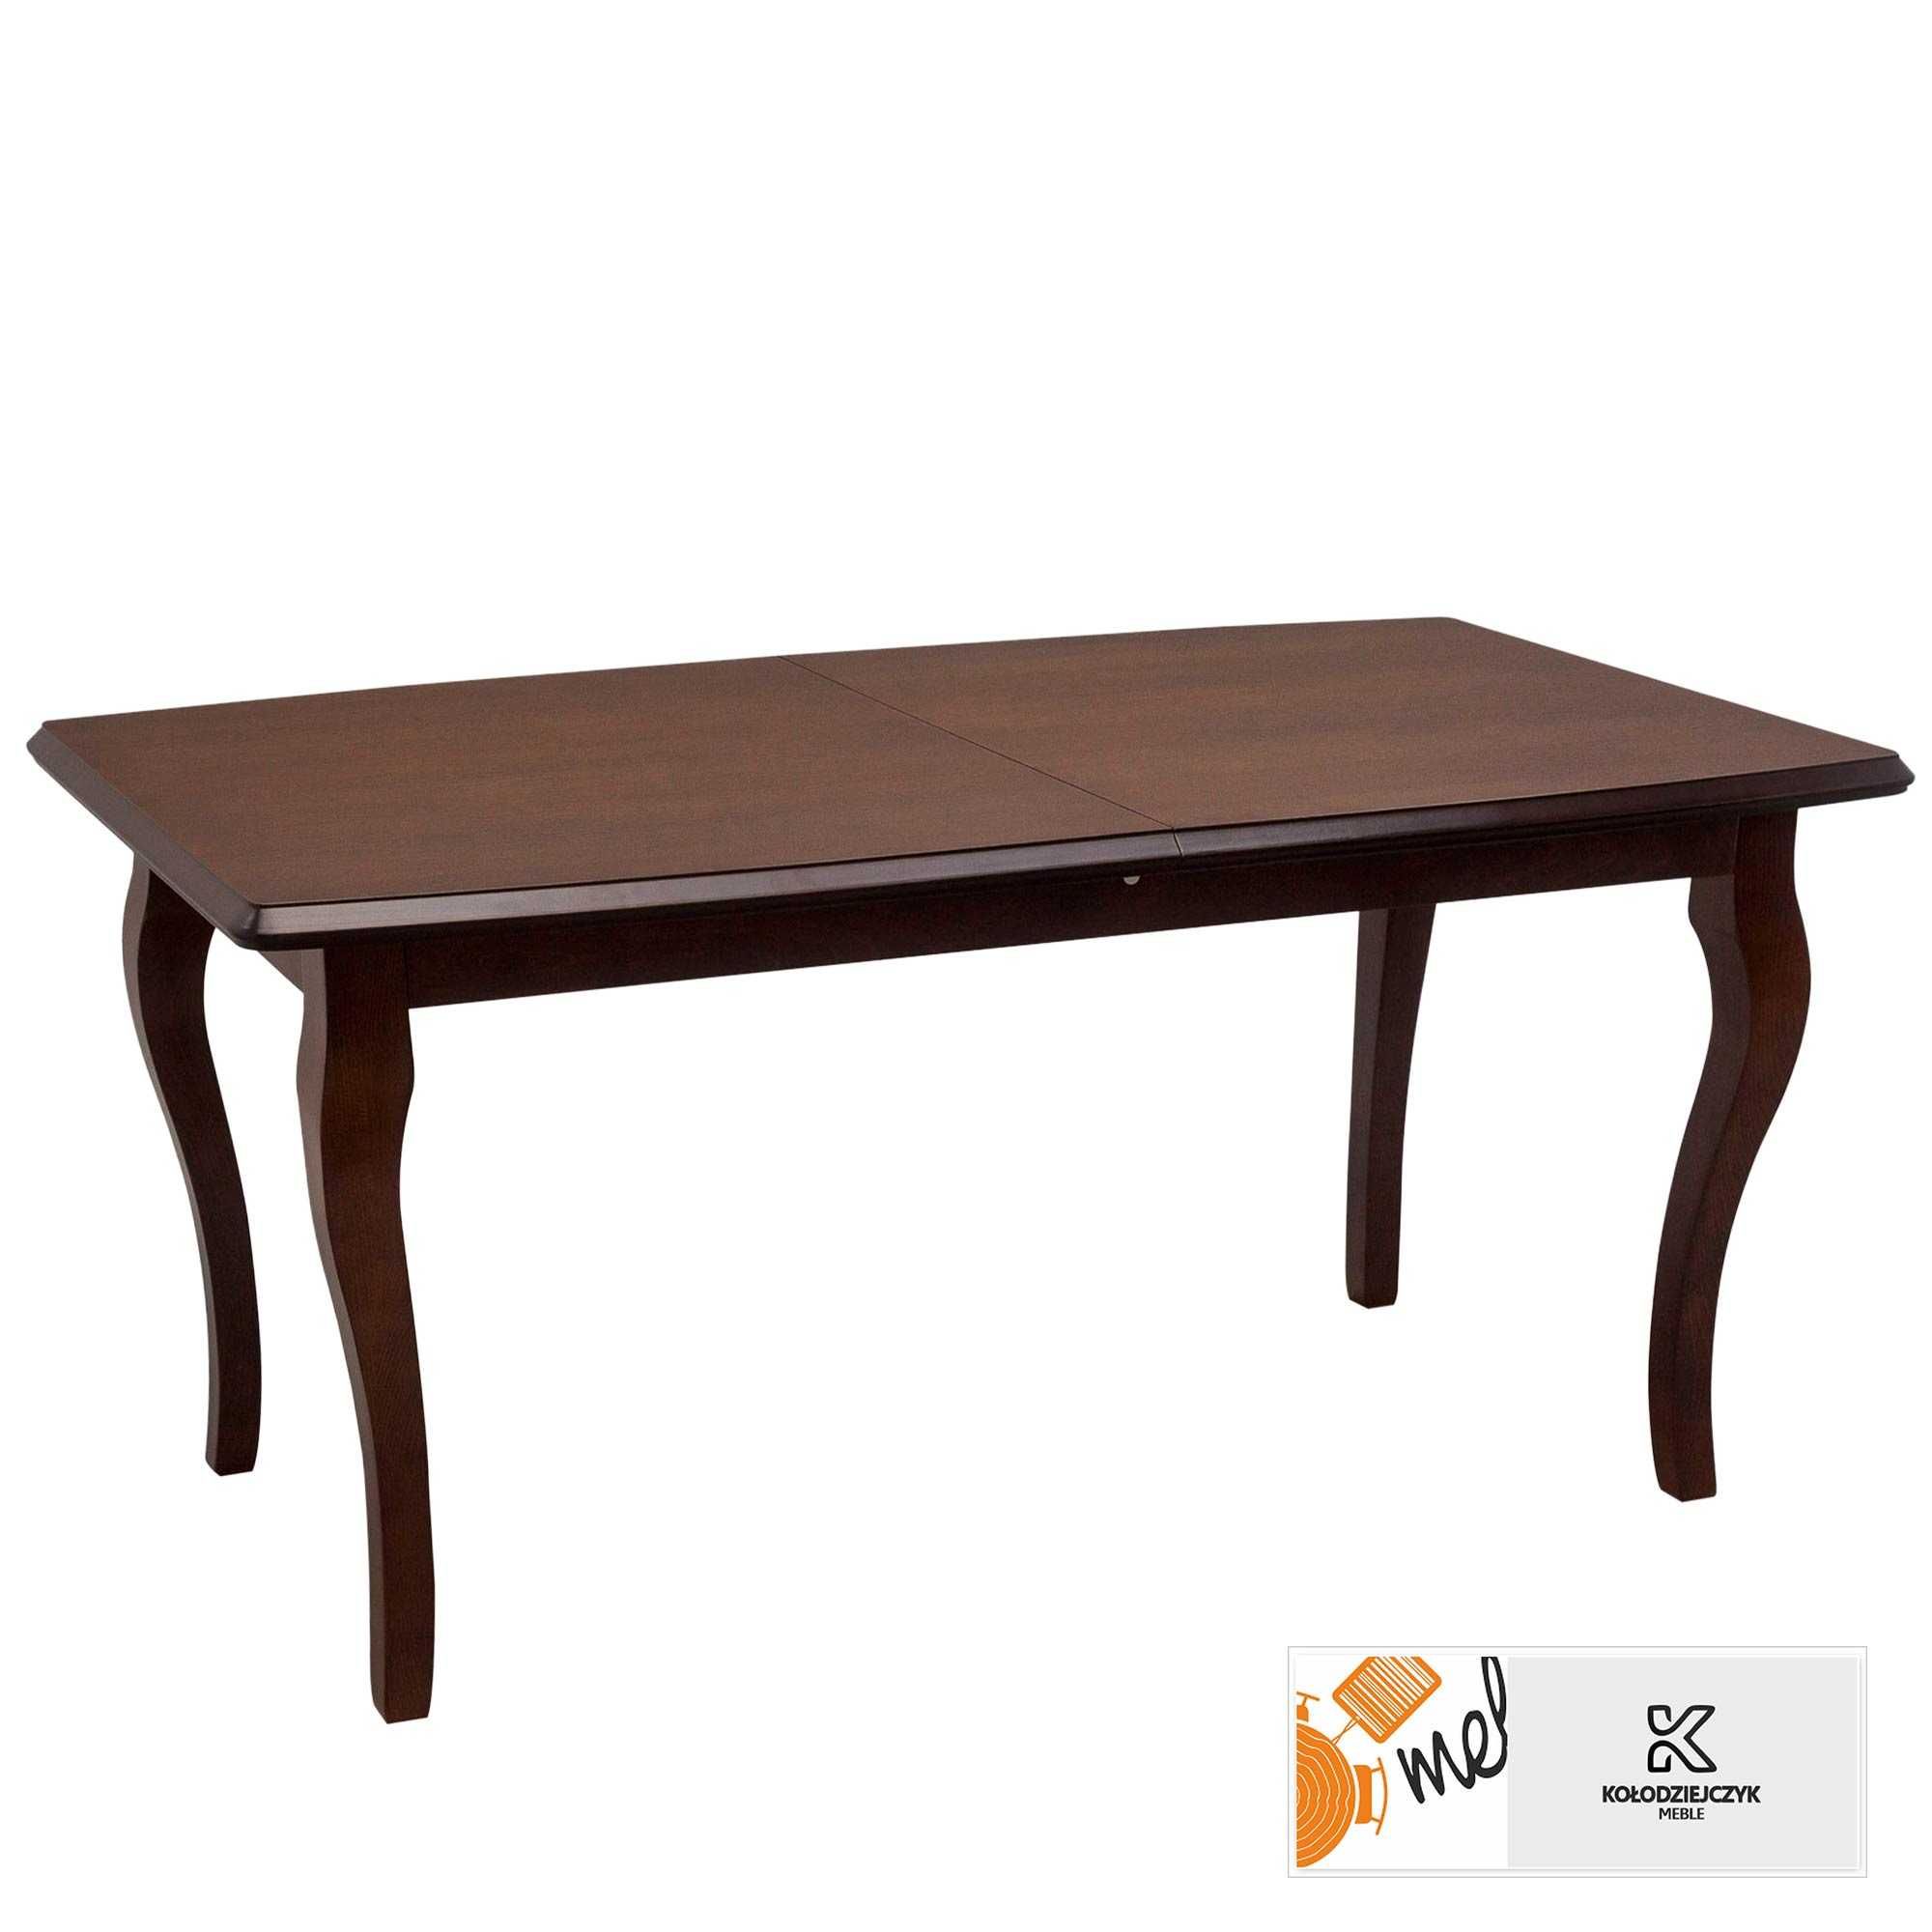 Stylowy drewniany stół rozkładany klasyczny Lludwikowski